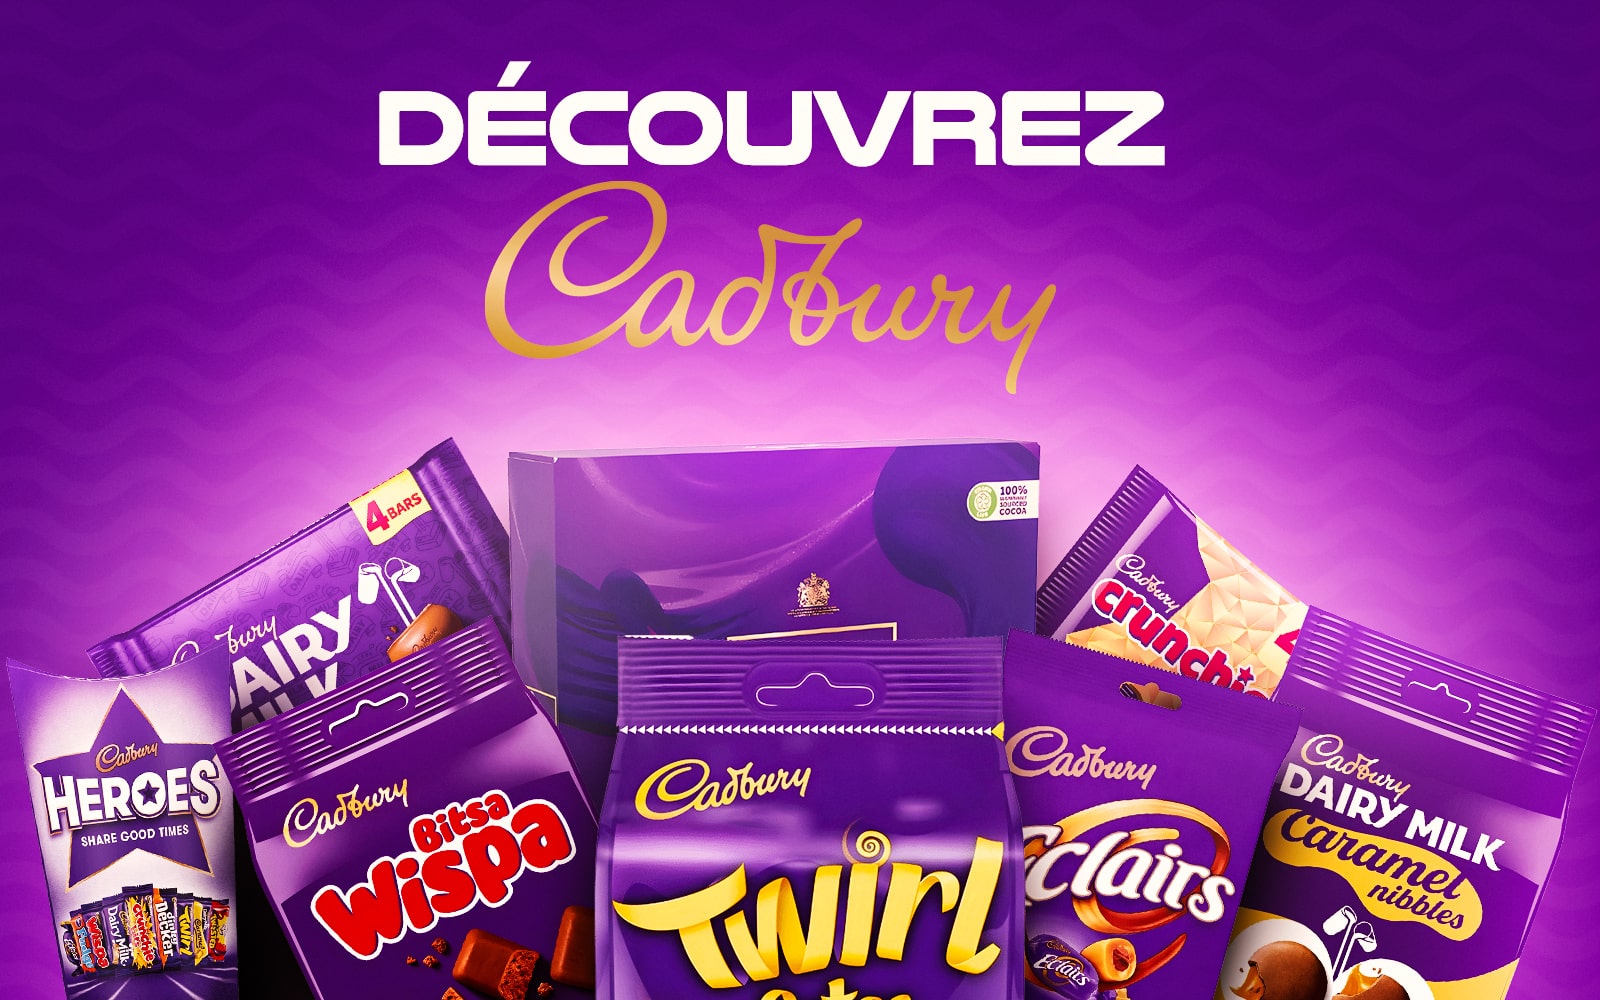 Découvrez Cadbury - Une variété de chocolats Cadbury comme Dairy Milk, Twirl, Eclairs et plus encore